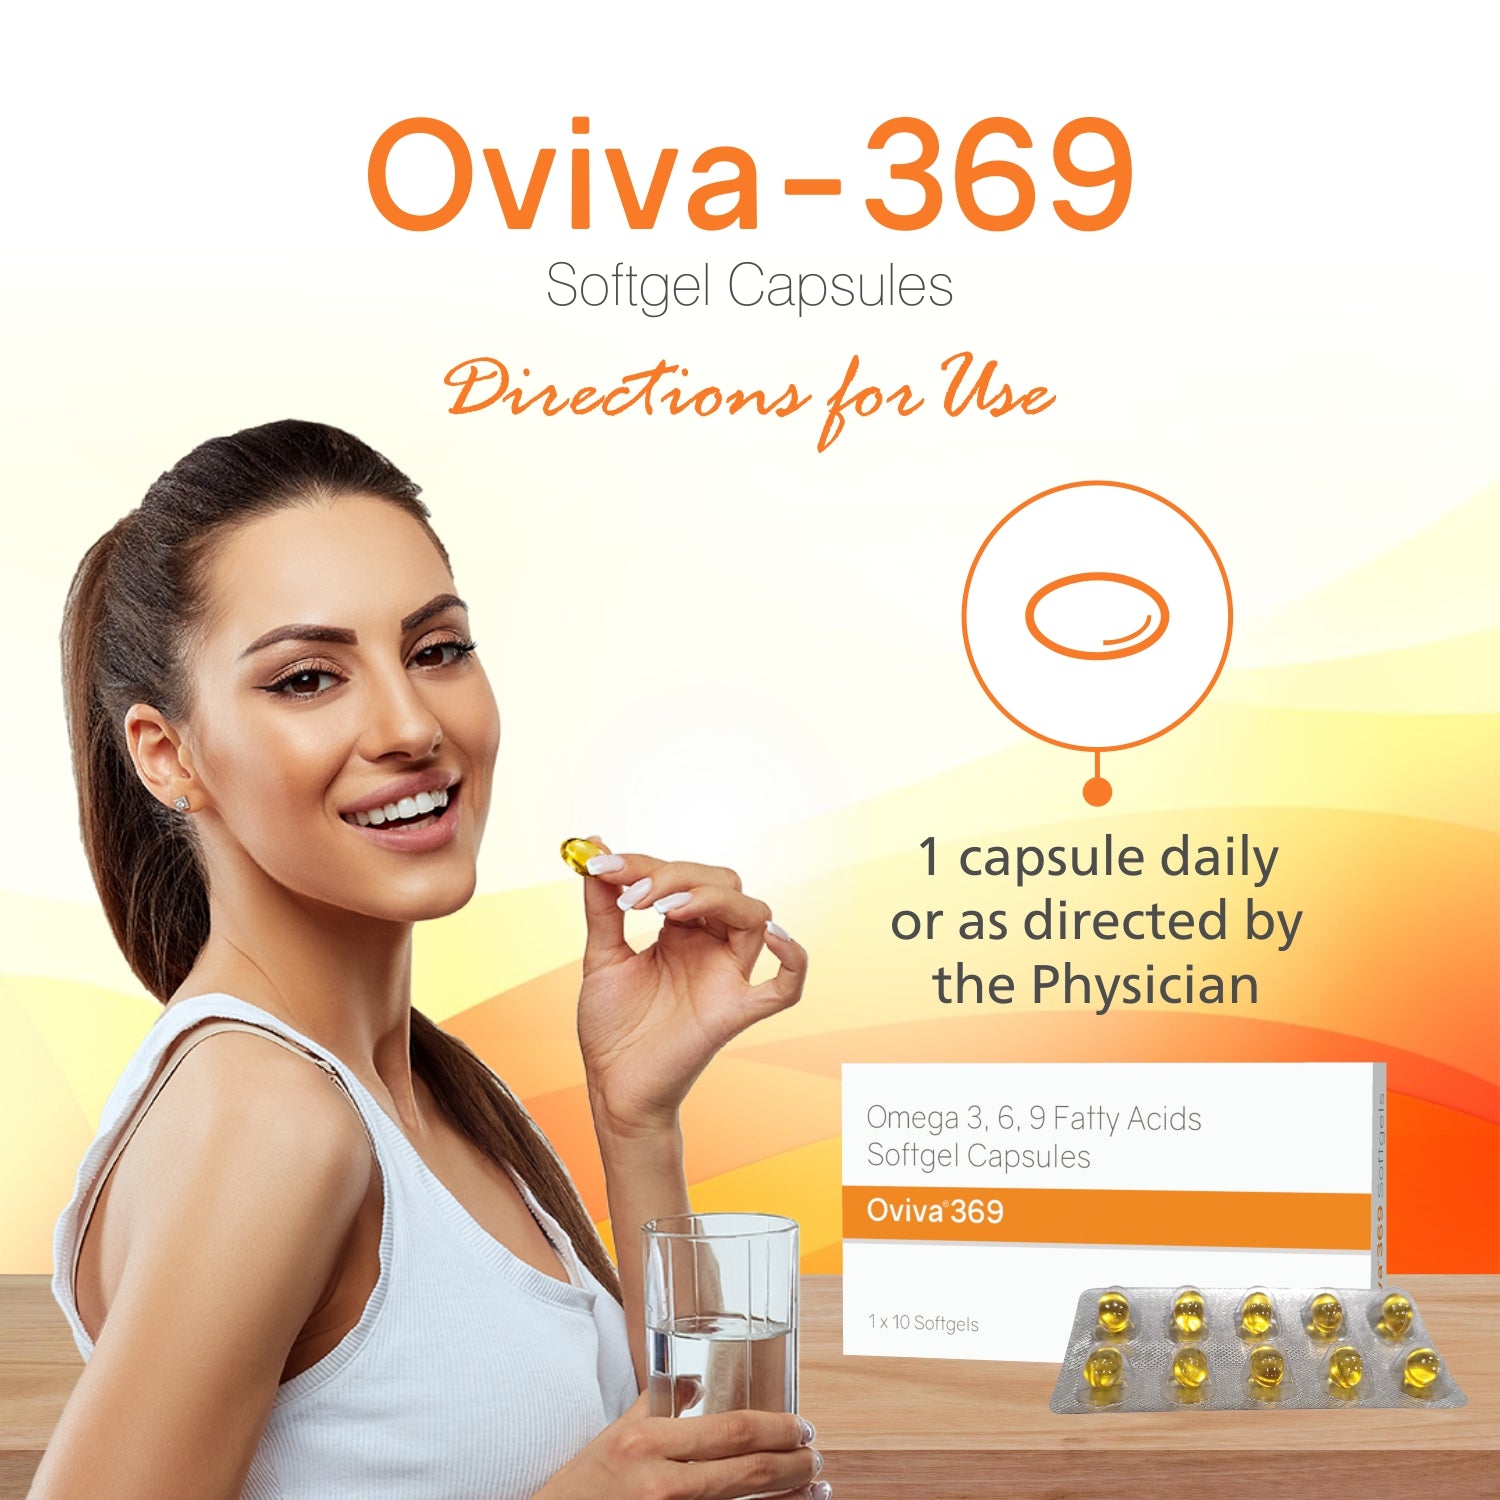 Oviva-369 Softgel (1 x 10 Blister)